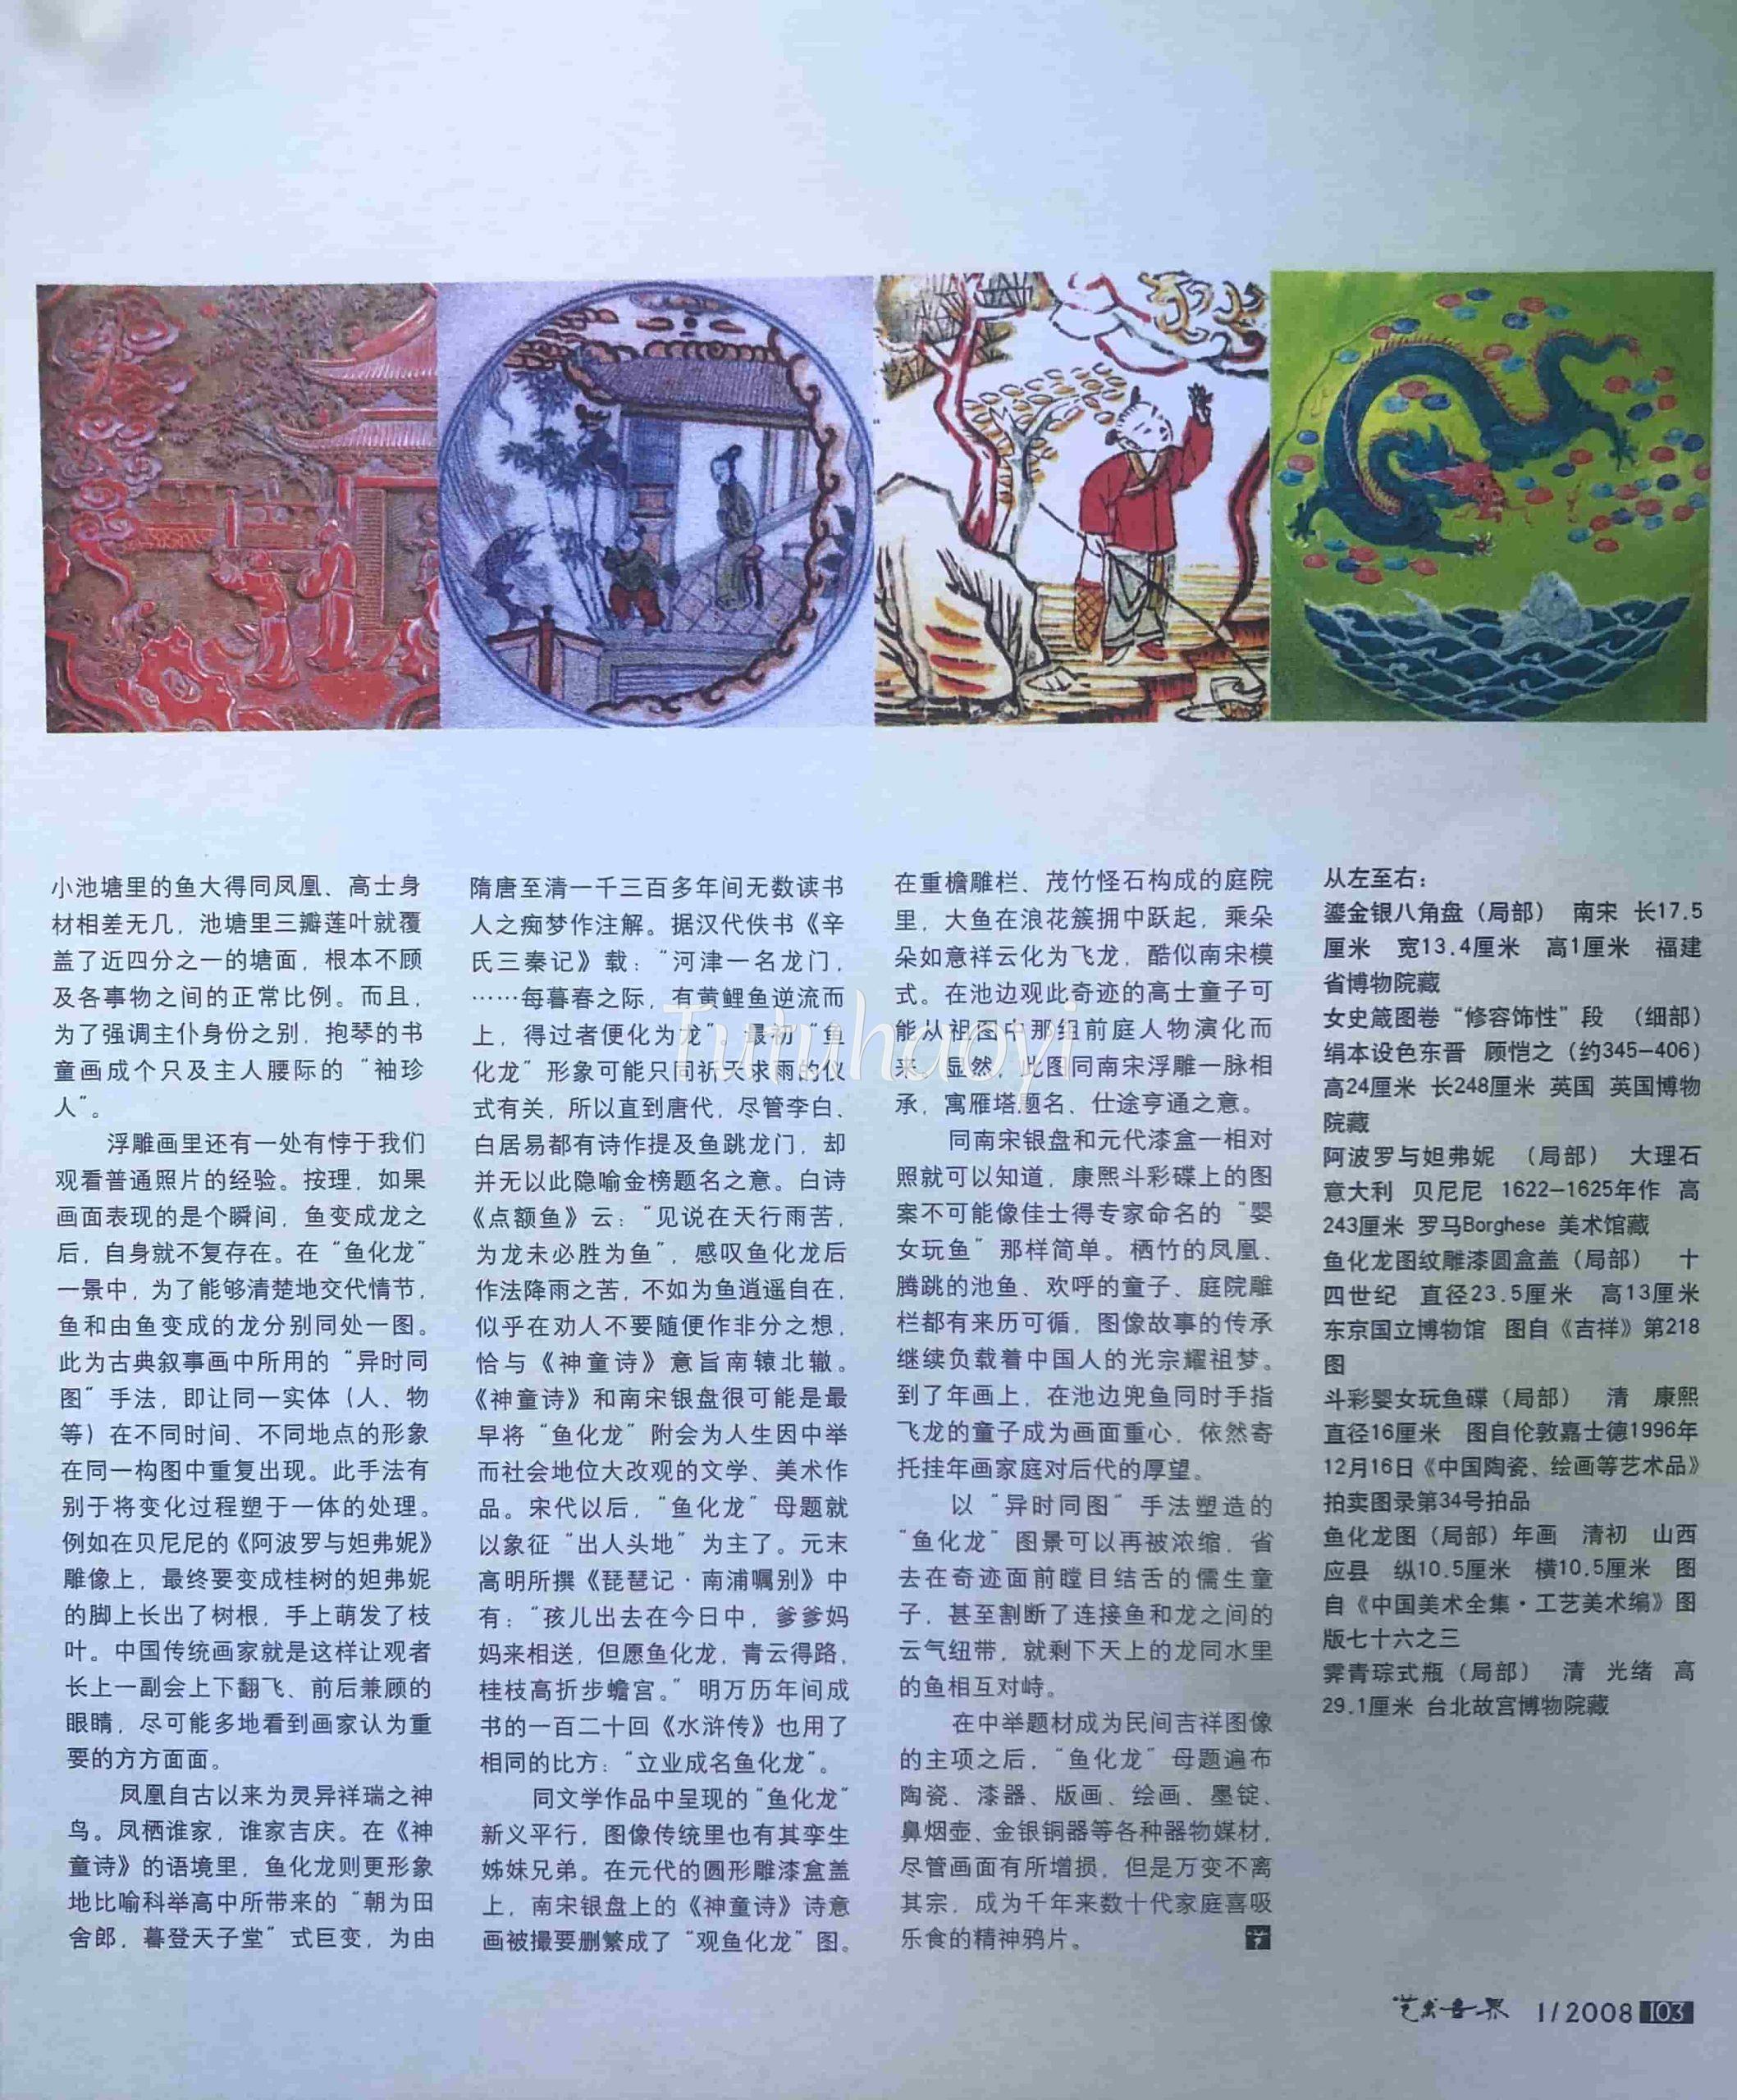 倪亦斌发表文章在艺术世界